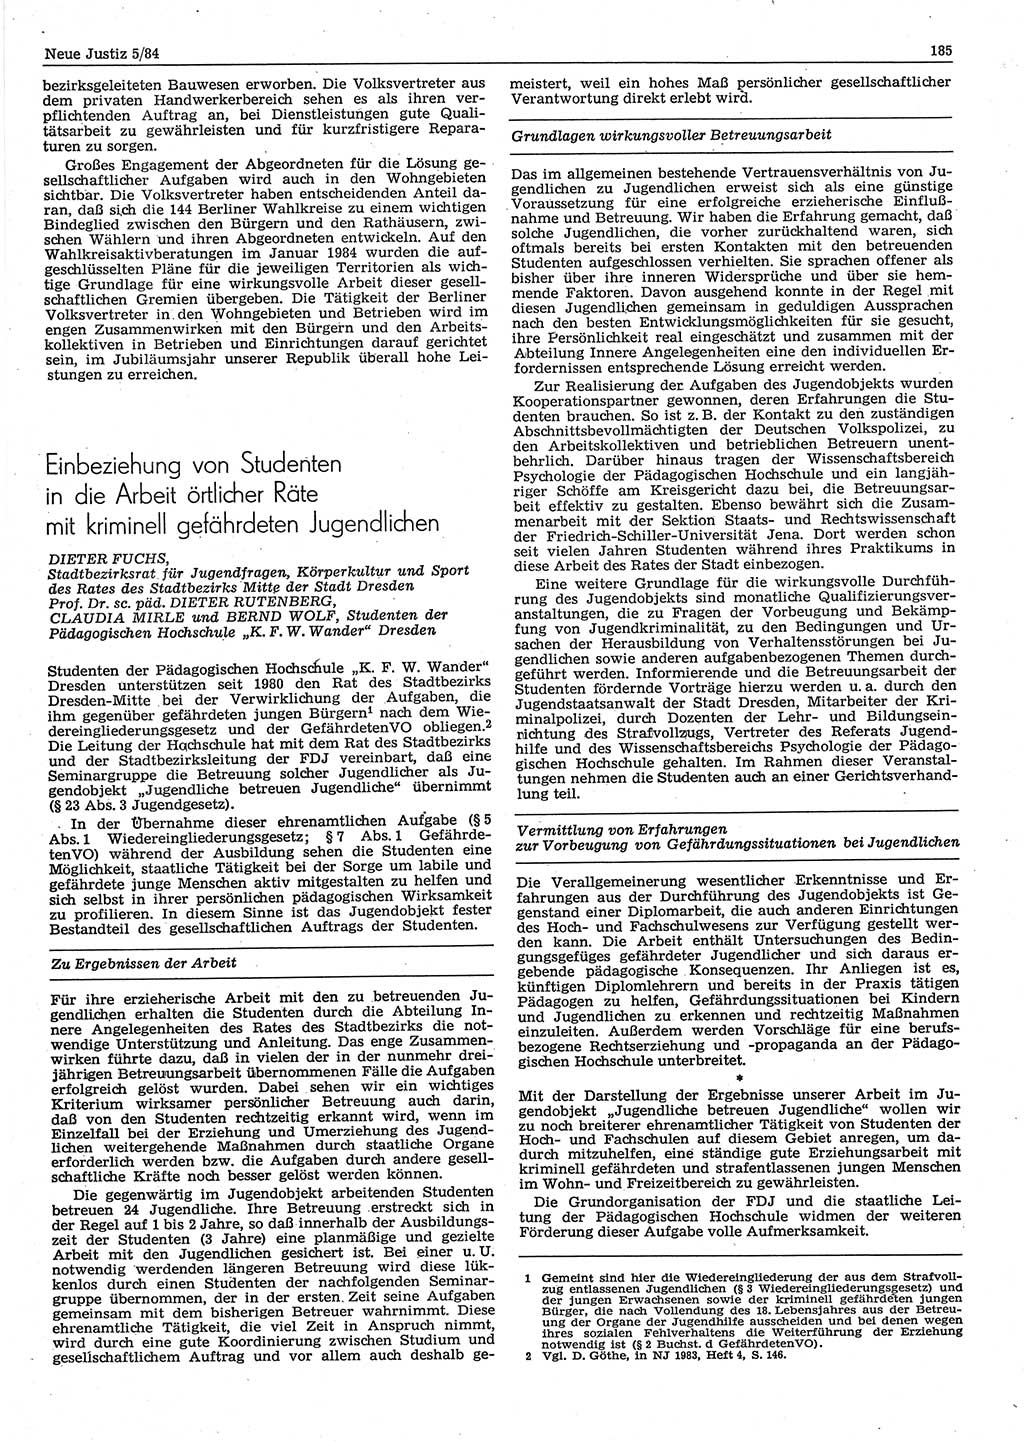 Neue Justiz (NJ), Zeitschrift für sozialistisches Recht und Gesetzlichkeit [Deutsche Demokratische Republik (DDR)], 38. Jahrgang 1984, Seite 185 (NJ DDR 1984, S. 185)